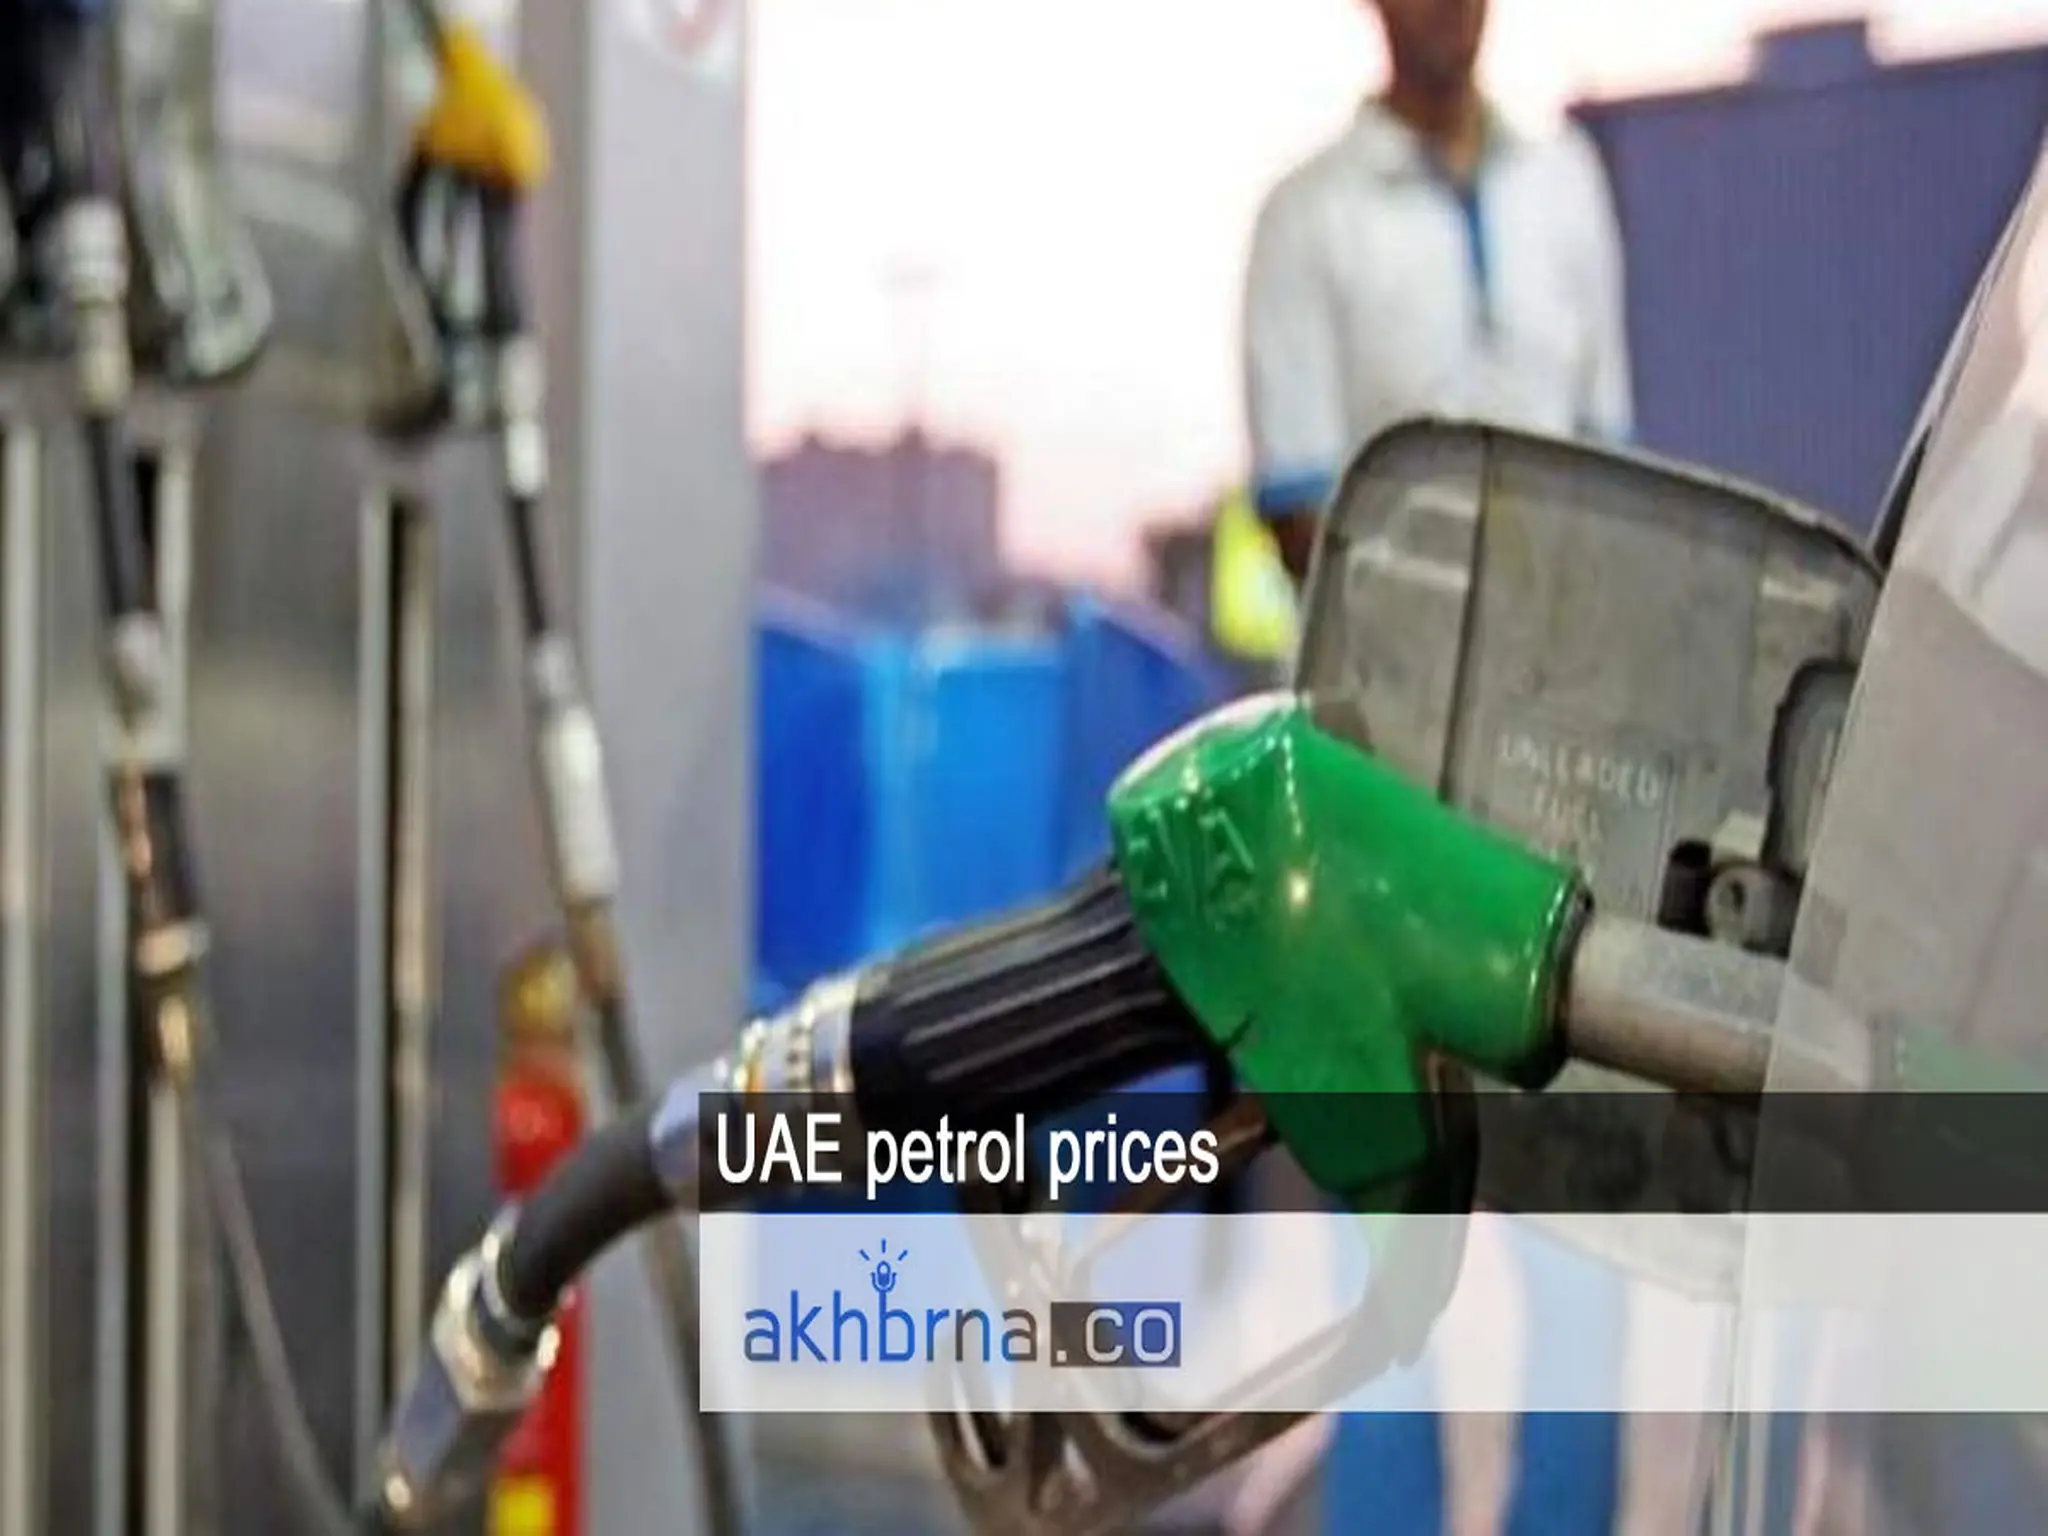 UAE petrol prices rise by 5% as diesel prices decline